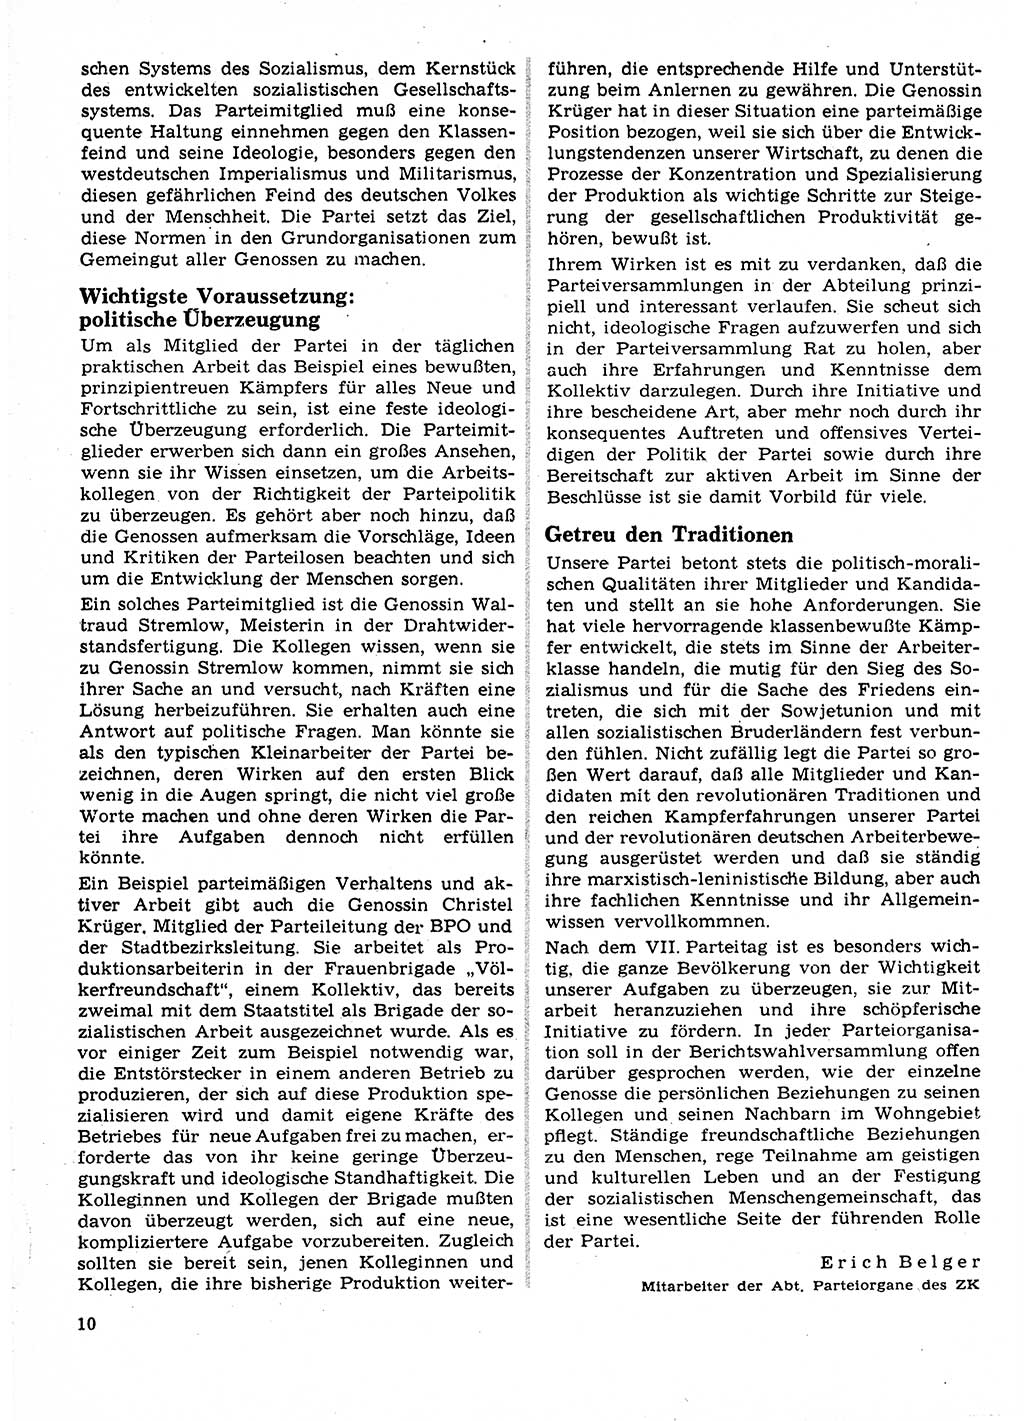 Neuer Weg (NW), Organ des Zentralkomitees (ZK) der SED (Sozialistische Einheitspartei Deutschlands) für Fragen des Parteilebens, 23. Jahrgang [Deutsche Demokratische Republik (DDR)] 1968, Seite 10 (NW ZK SED DDR 1968, S. 10)